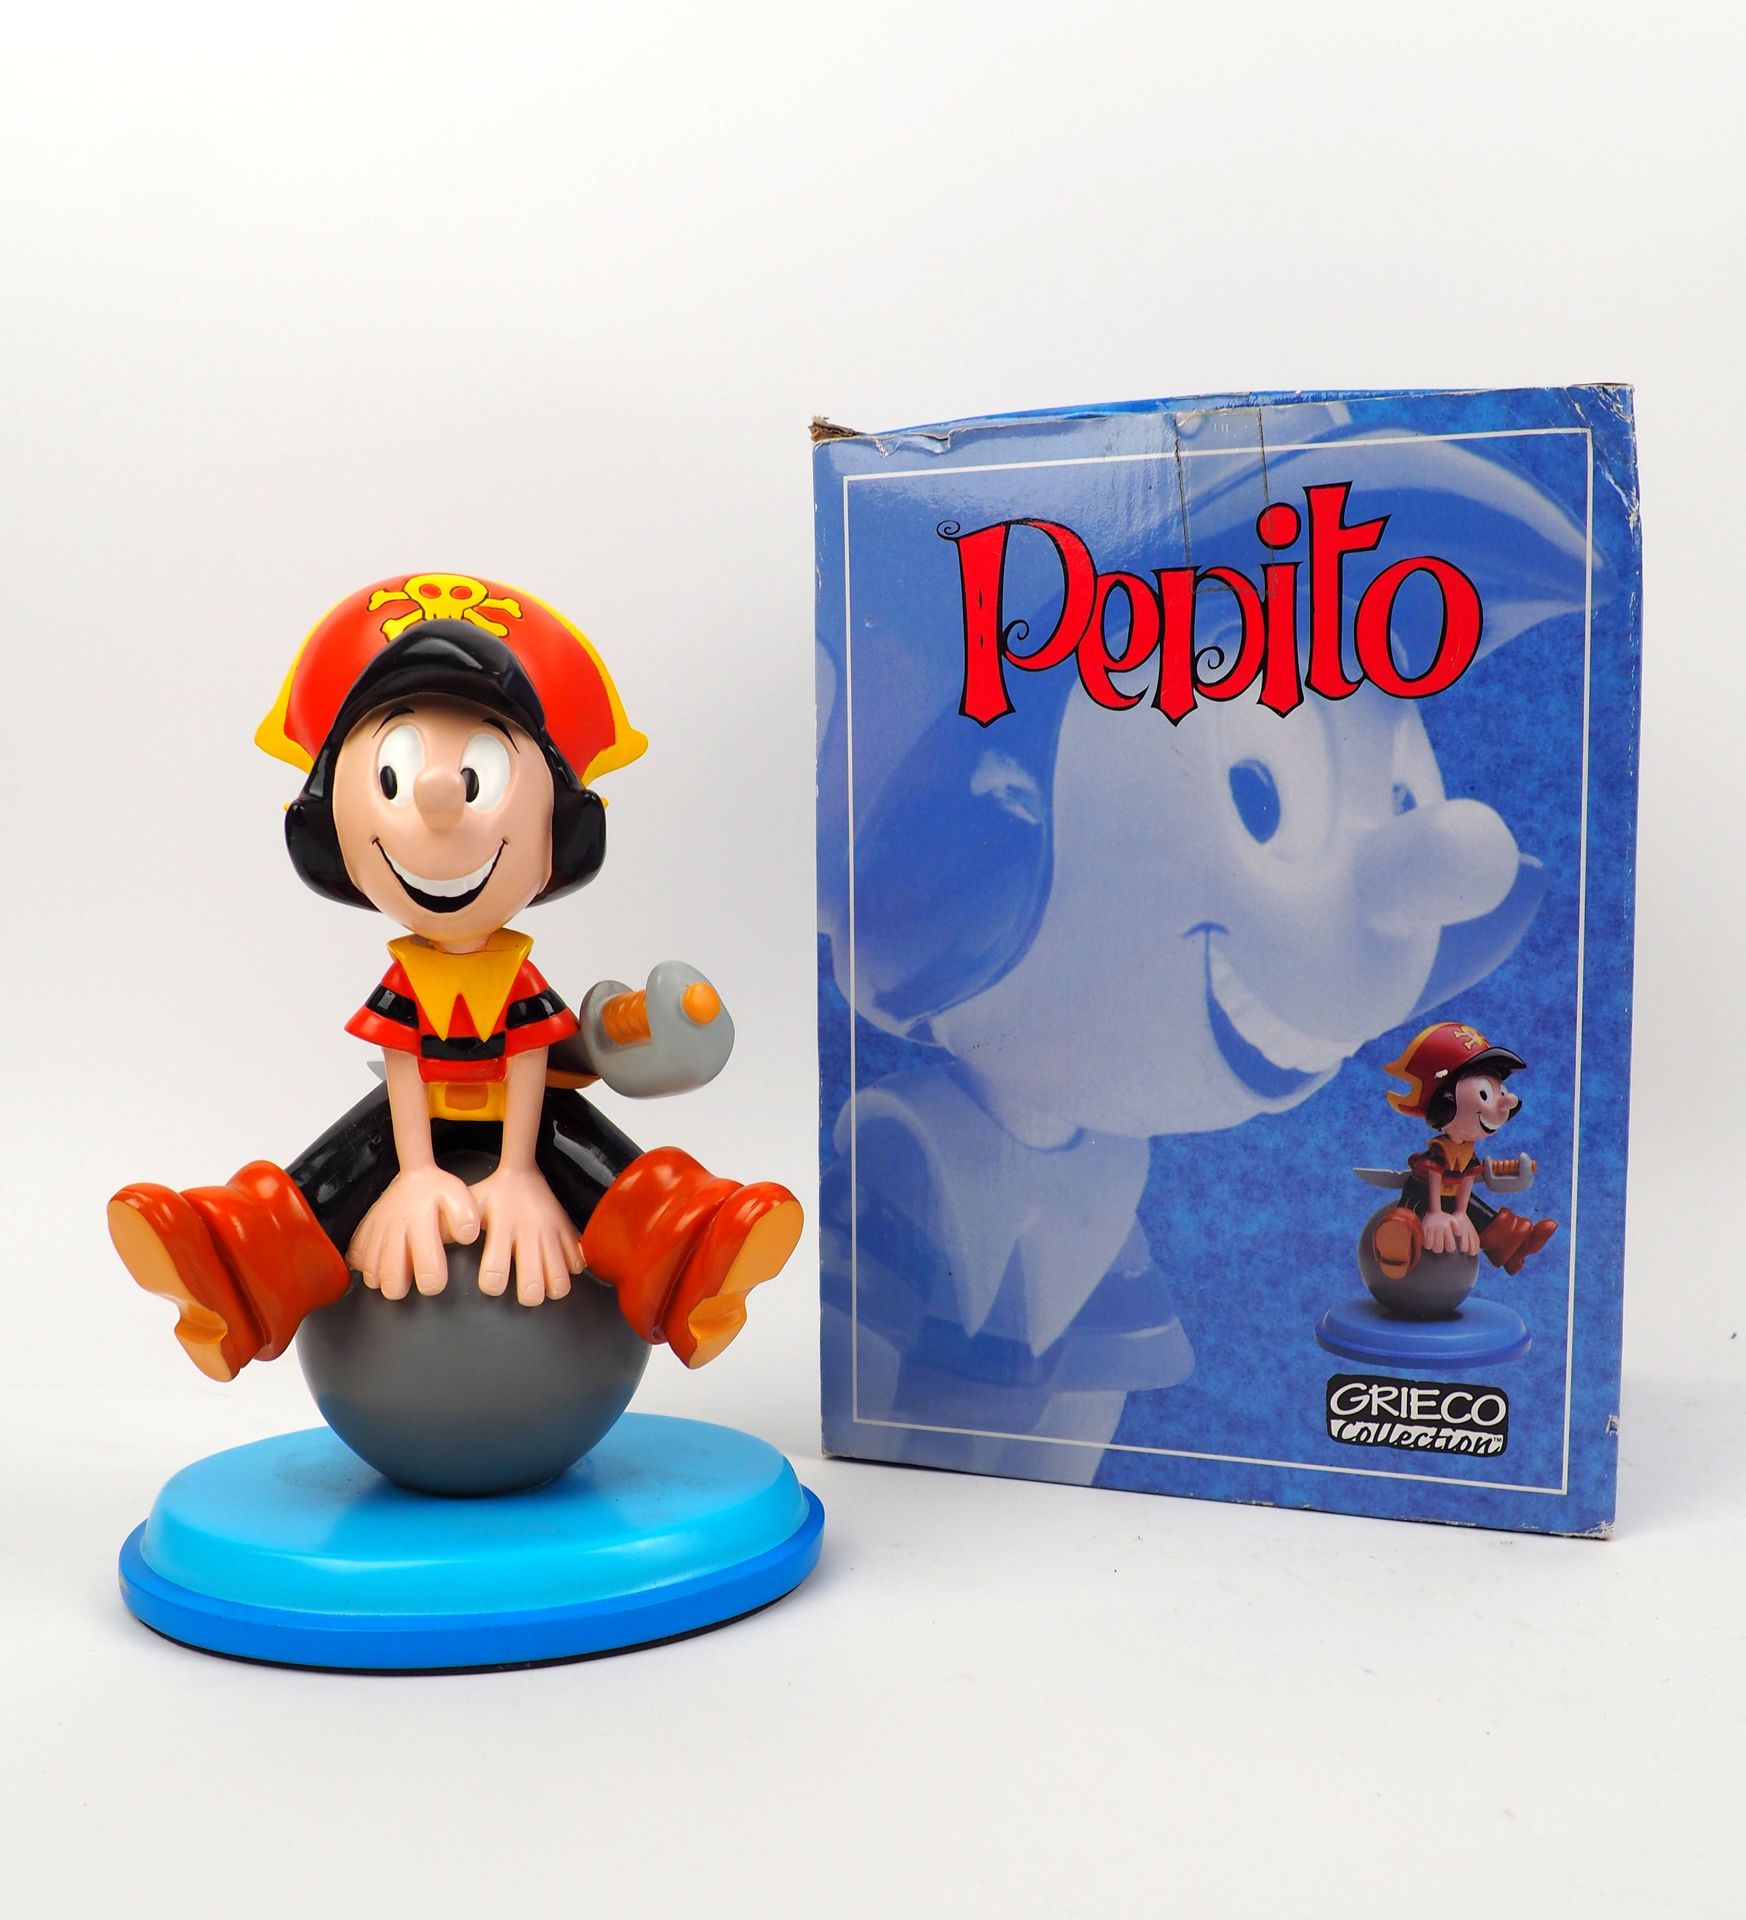 Null BOTTARO
Pepito
Figurine éditée par Grieco, tirage limité à 500 exemplaires
&hellip;